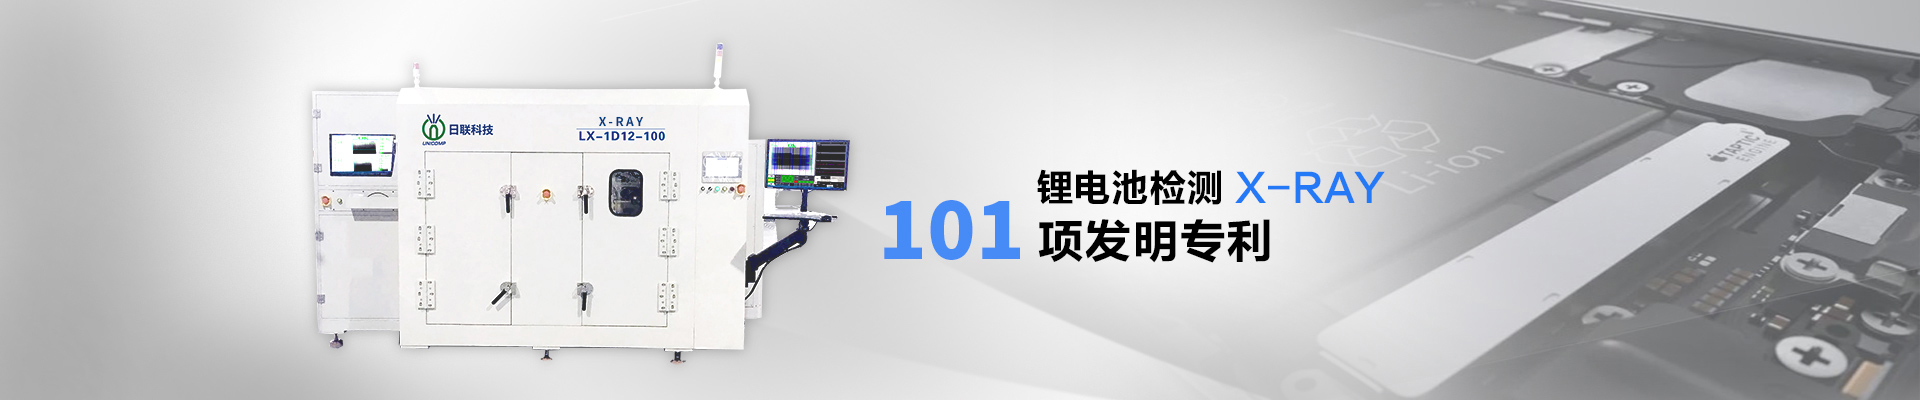 米乐m6电竞竞猜m6米乐app官网下载X-Ray检测设备